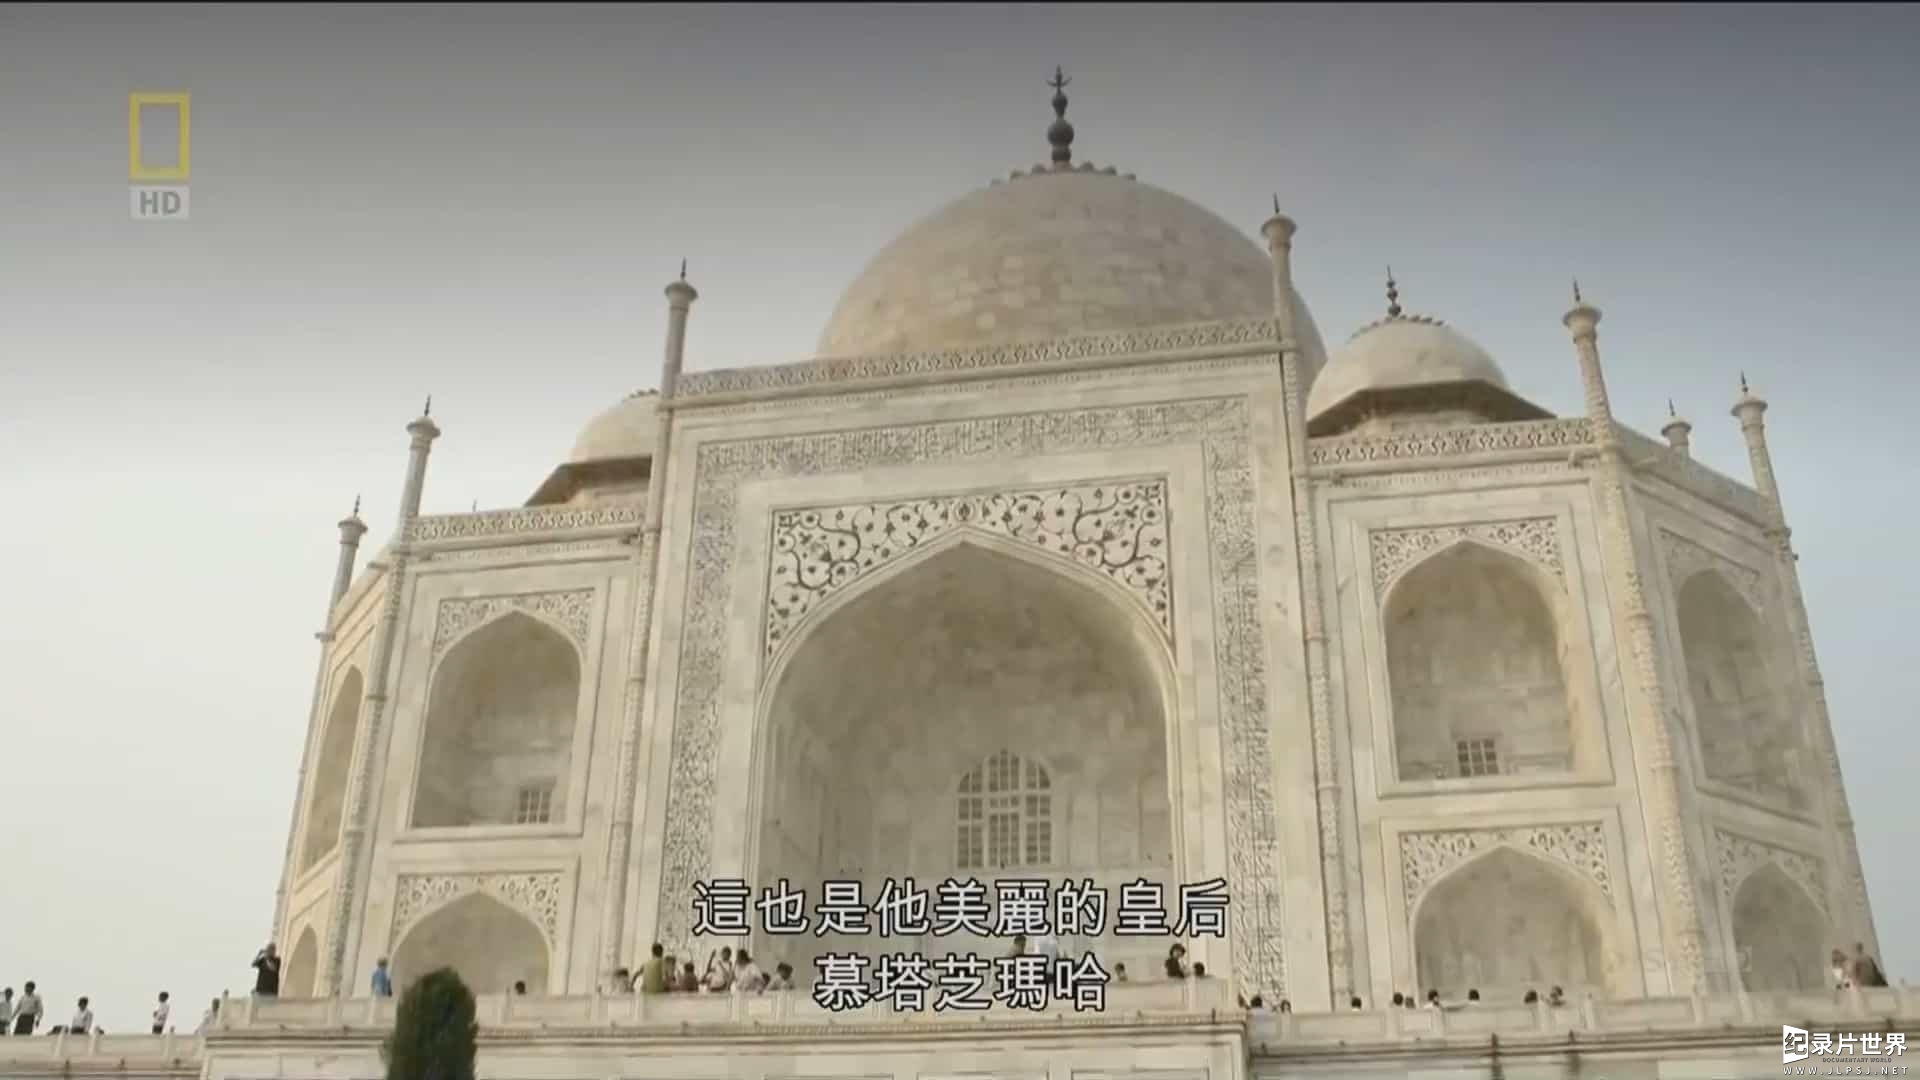 国家地理《泰姬玛哈陵的秘密/秦始皇陵的惊天秘密 Secrets of The Taj Mahal 2015》全1集